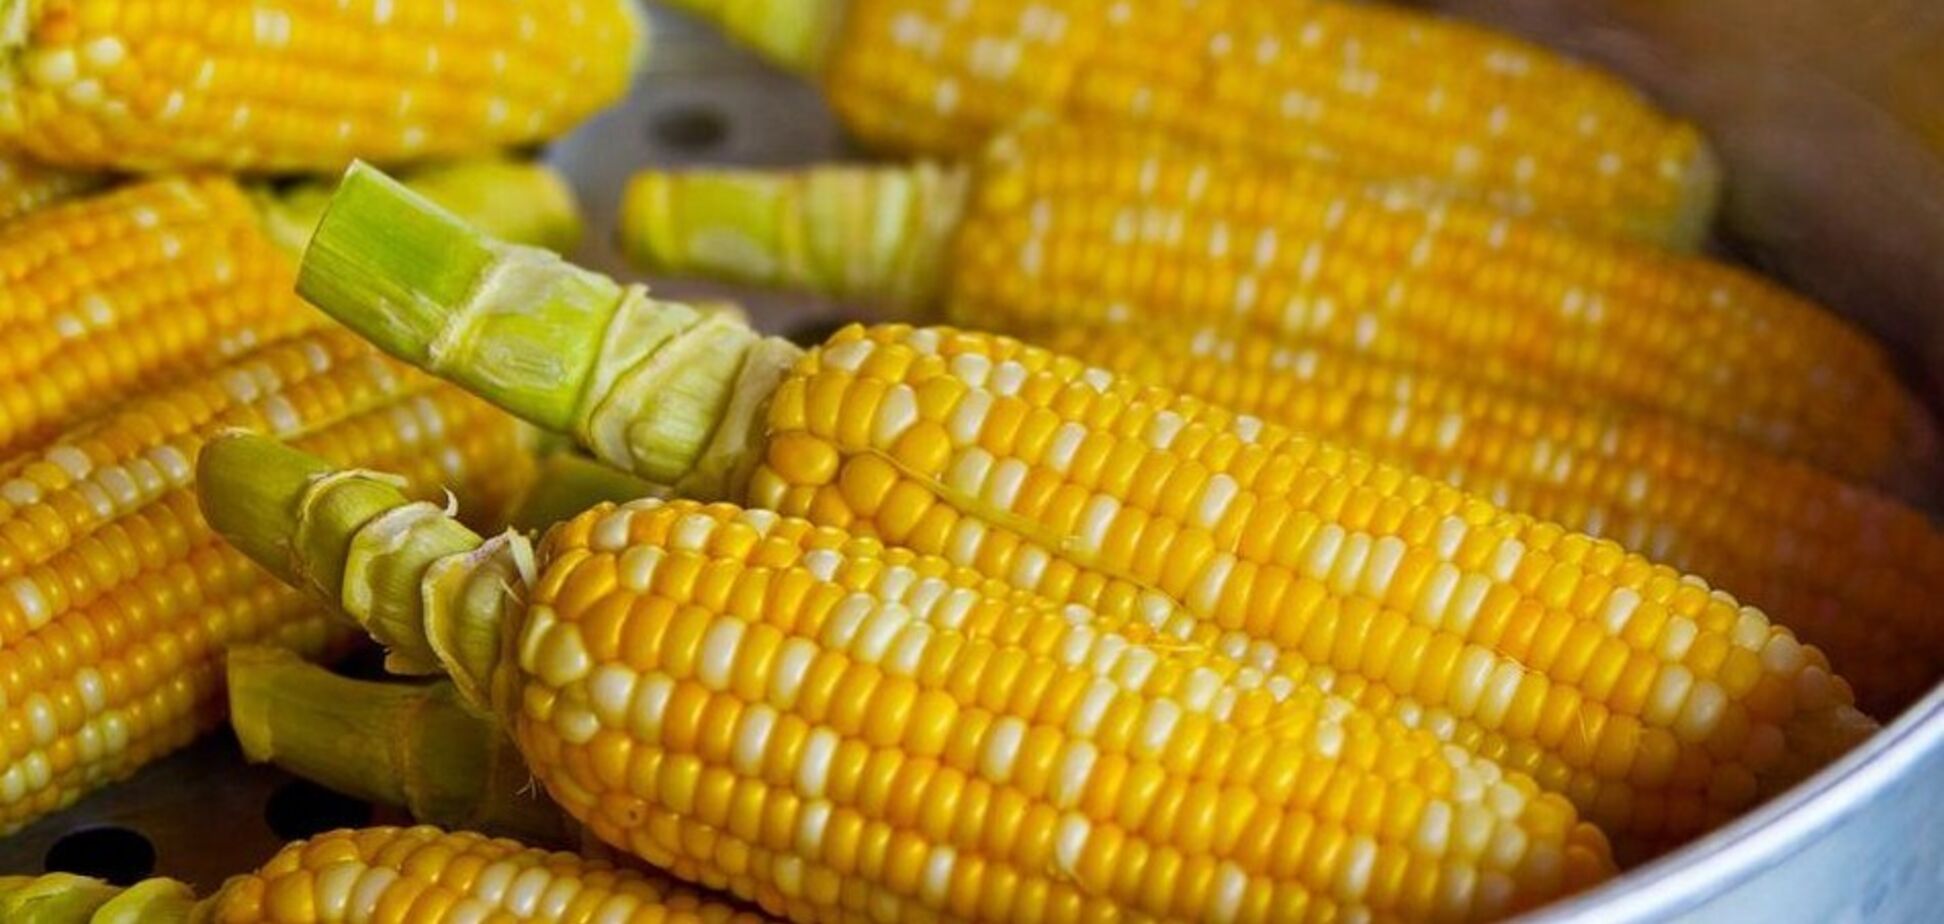 Как правильно готовить и хранить кукурузу, чтобы сохранить полезные свойства